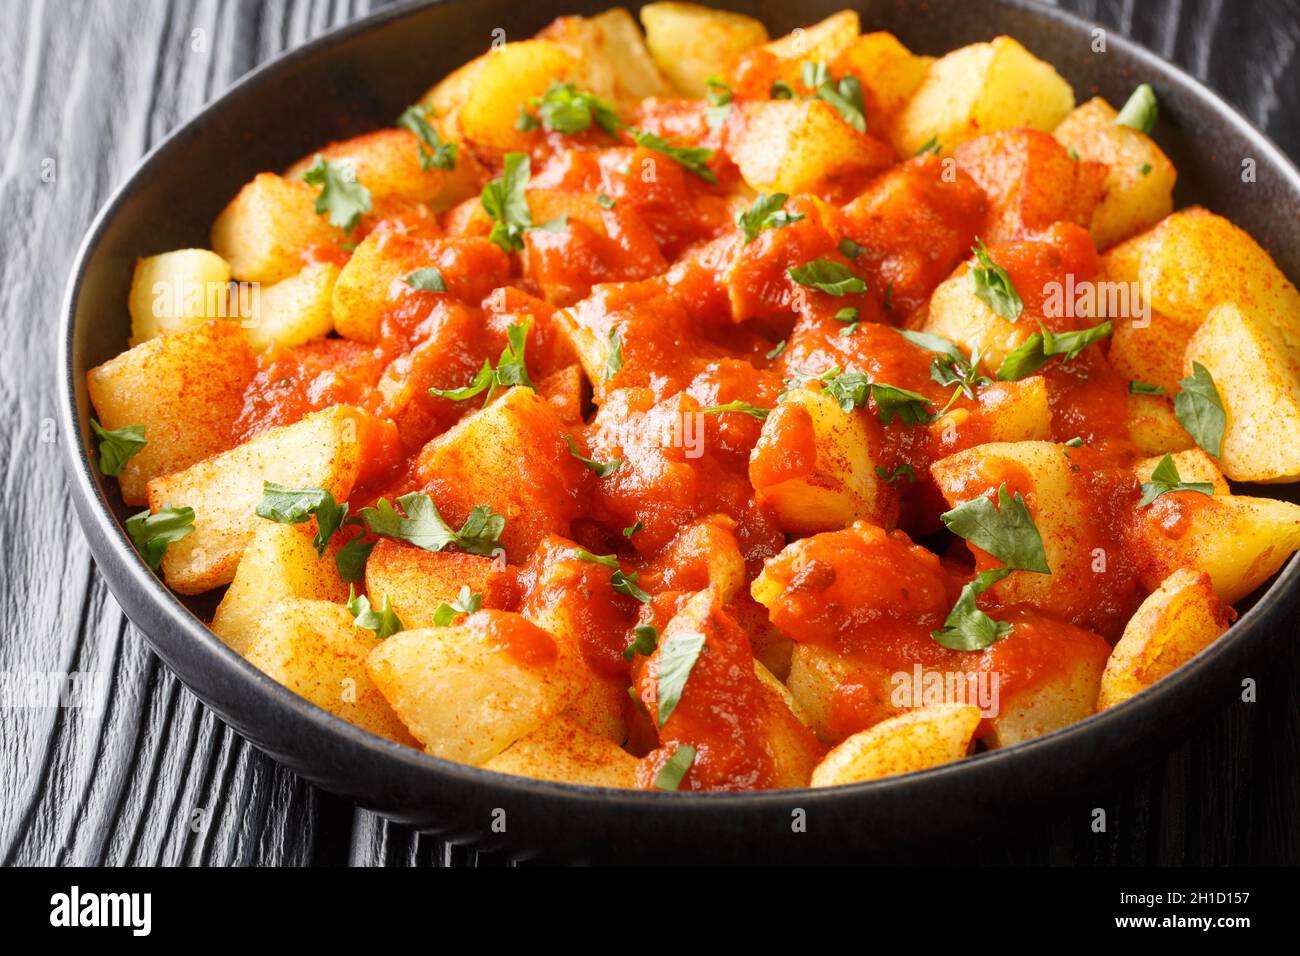 Pommes de terre frites croustillantes espagnoles, servies dans une sauce épicée brava, dans l'assiette de la table.Horizontale Banque D'Images